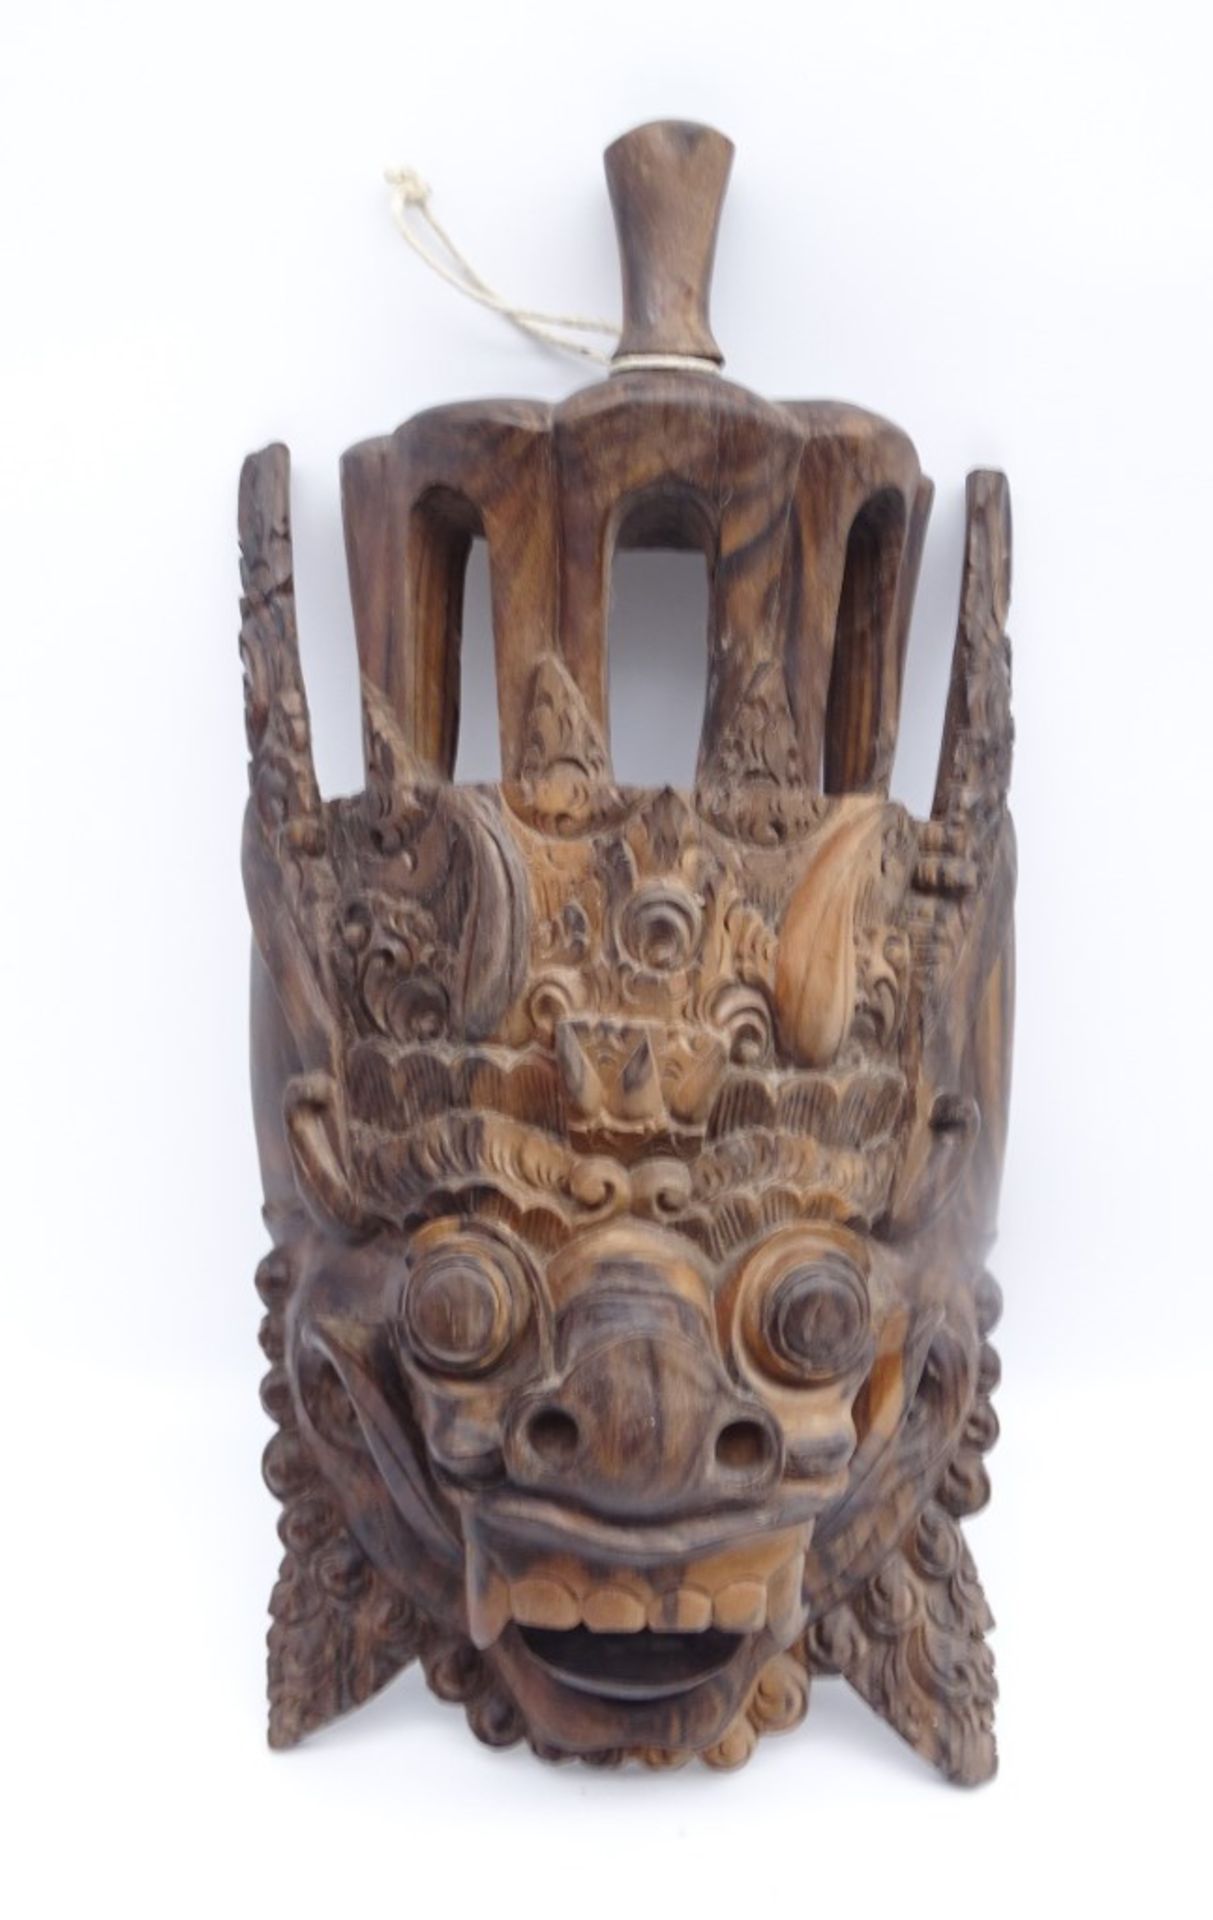 Barong-Maske aus Holz, Bali, ca. 38 x 17,5 cm, leicht reinigungsbedürftig